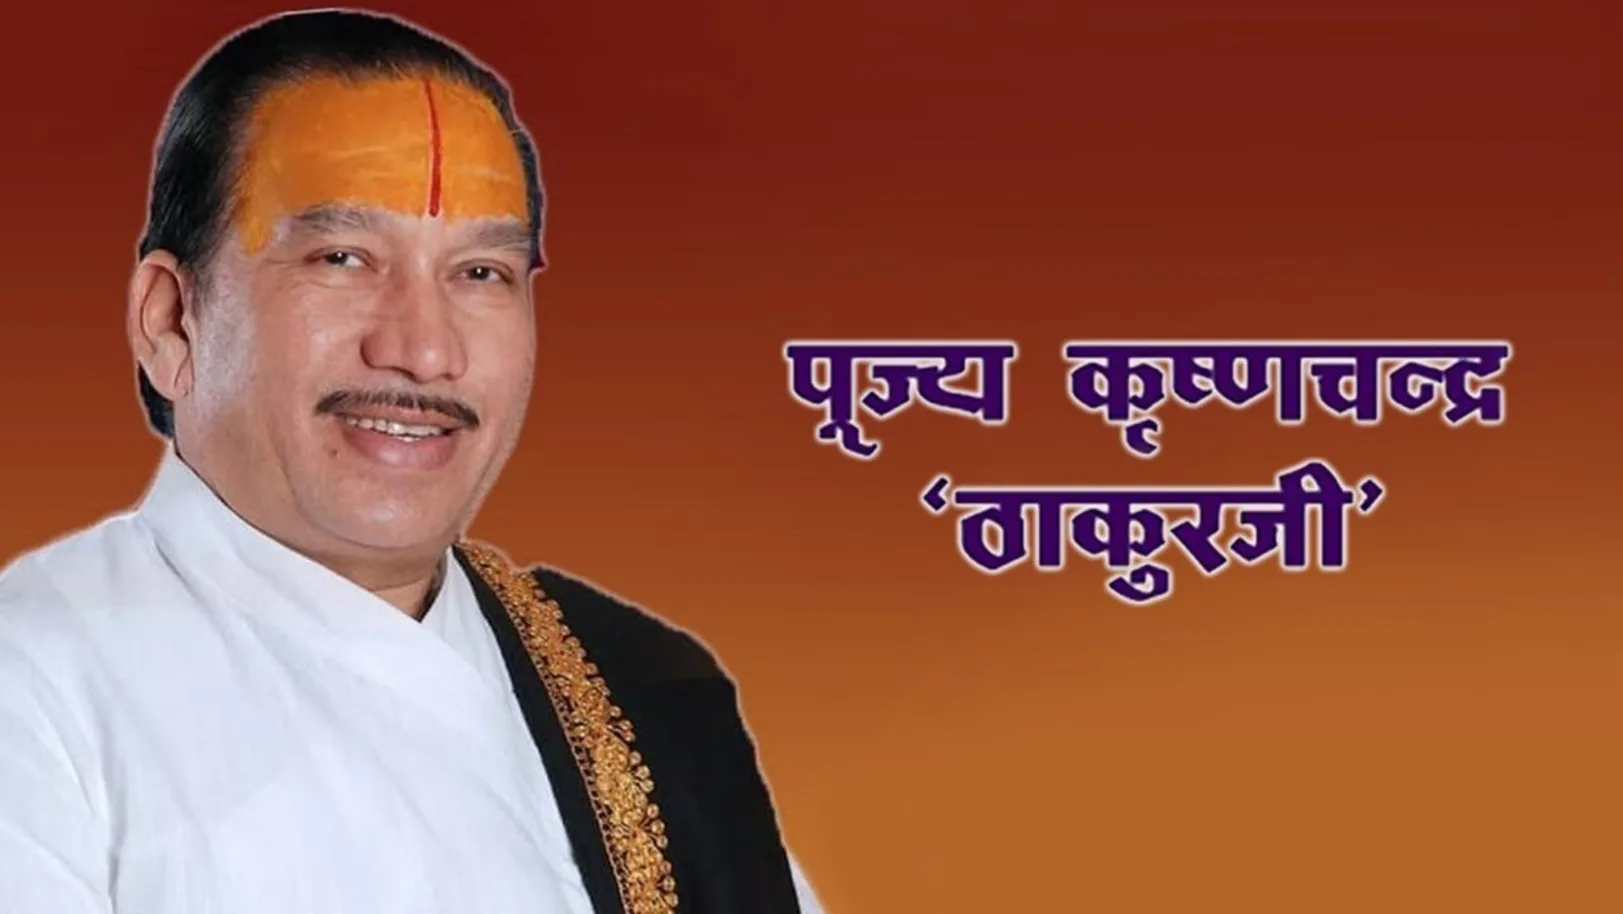 Pujya Krishnachandra Thakurji Streaming Now On Aastha Bhajan